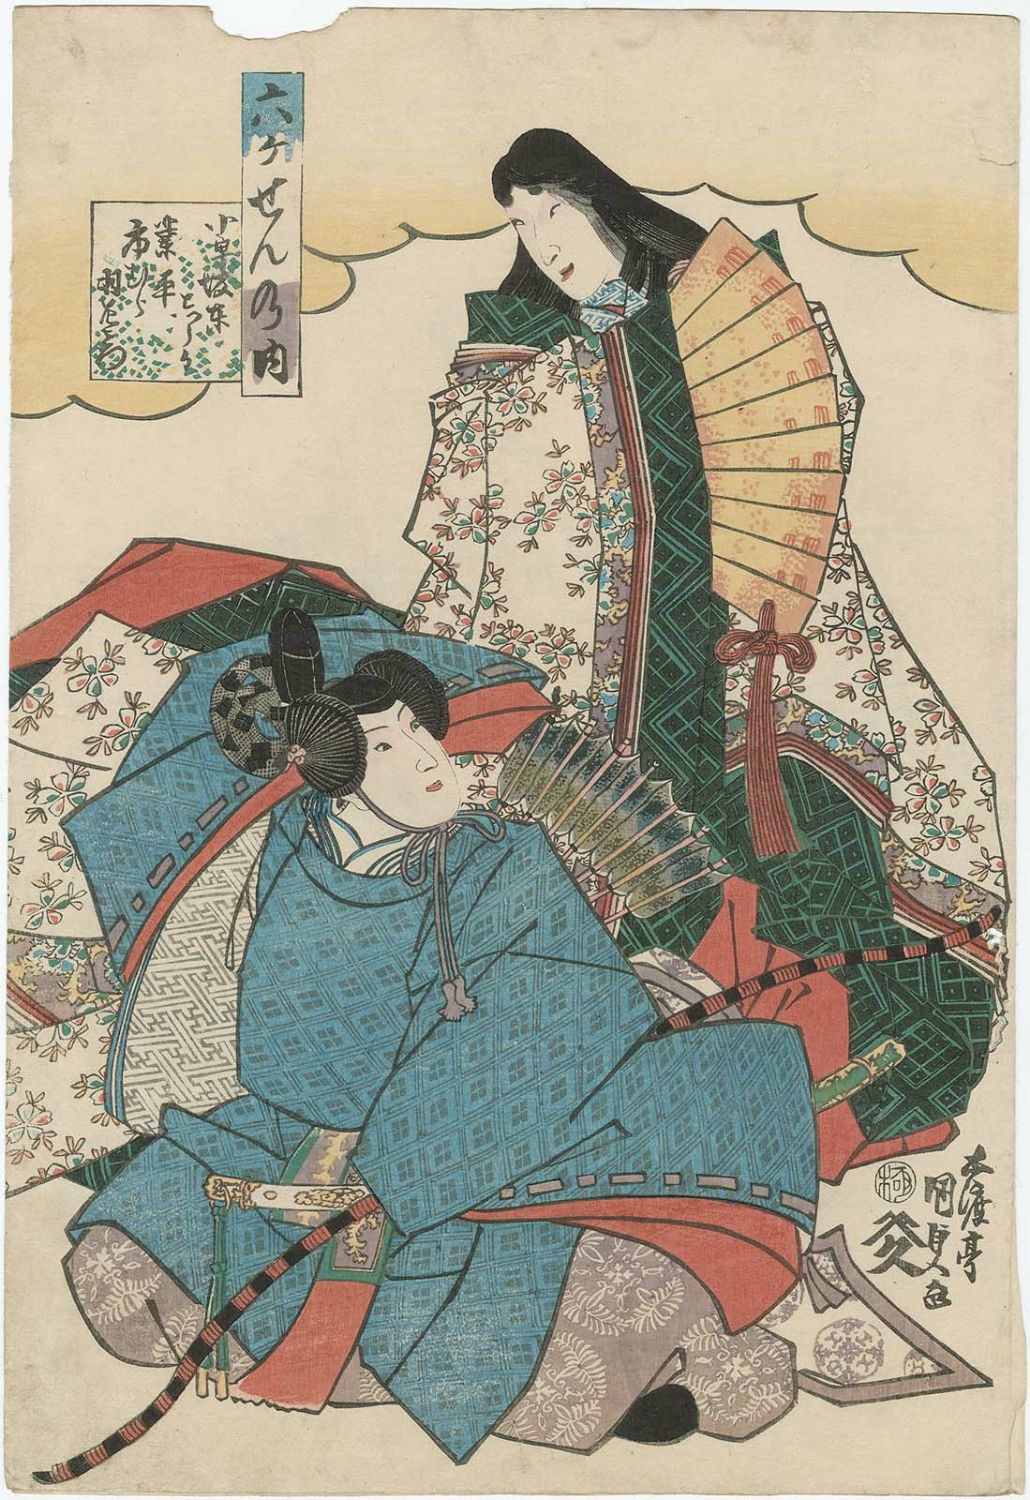 Utagawa Kunisada: Rokkasen no uchi - Museum of Fine Arts - Ukiyo-e Search